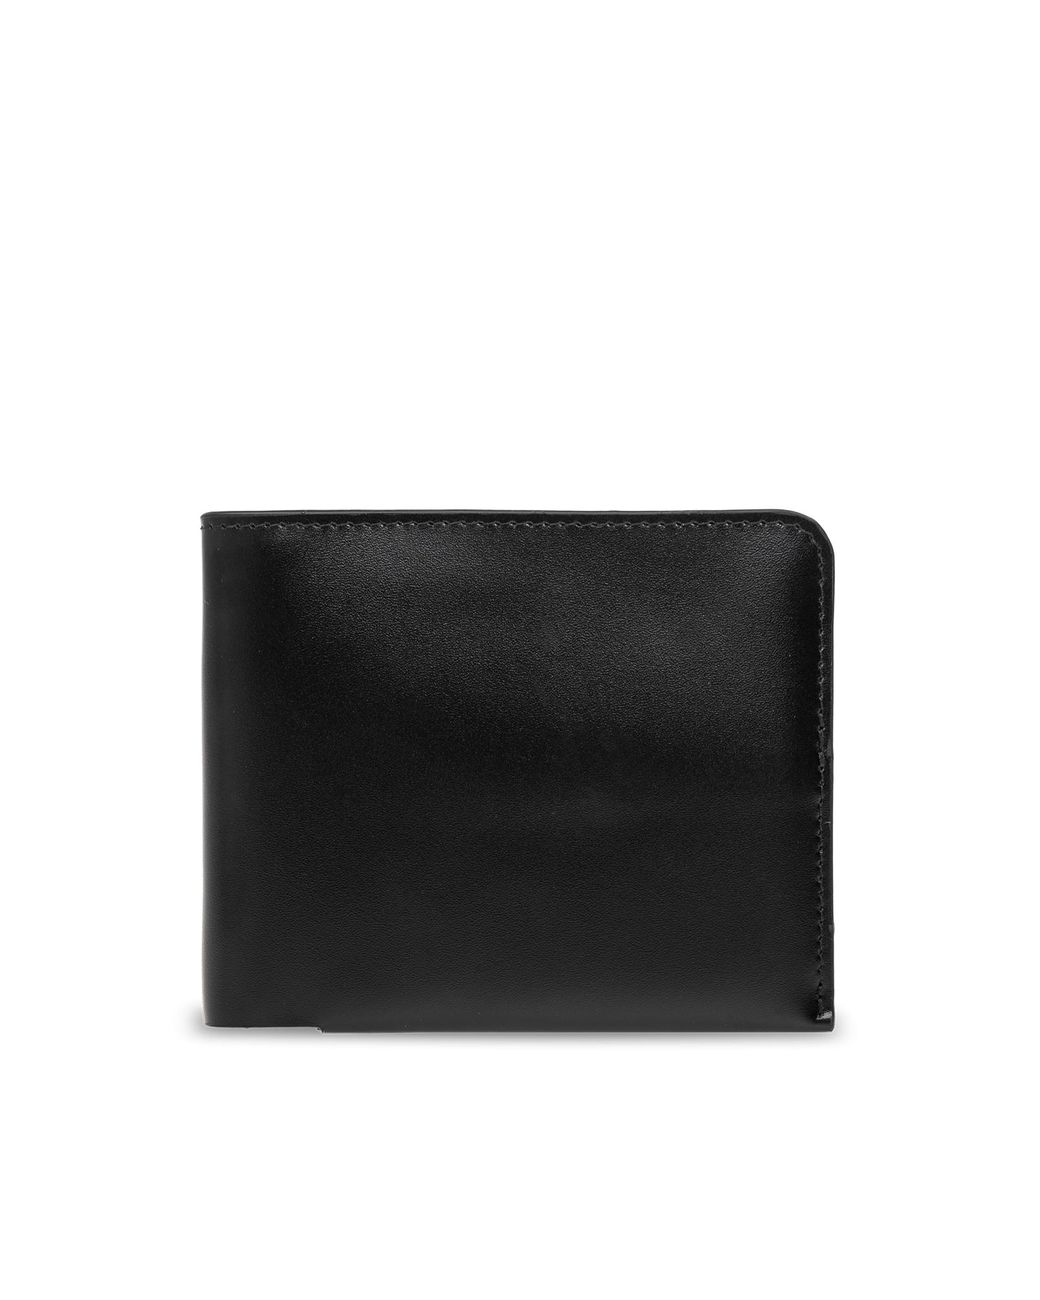 Dries Van Noten Leather Wallet in Black | Lyst